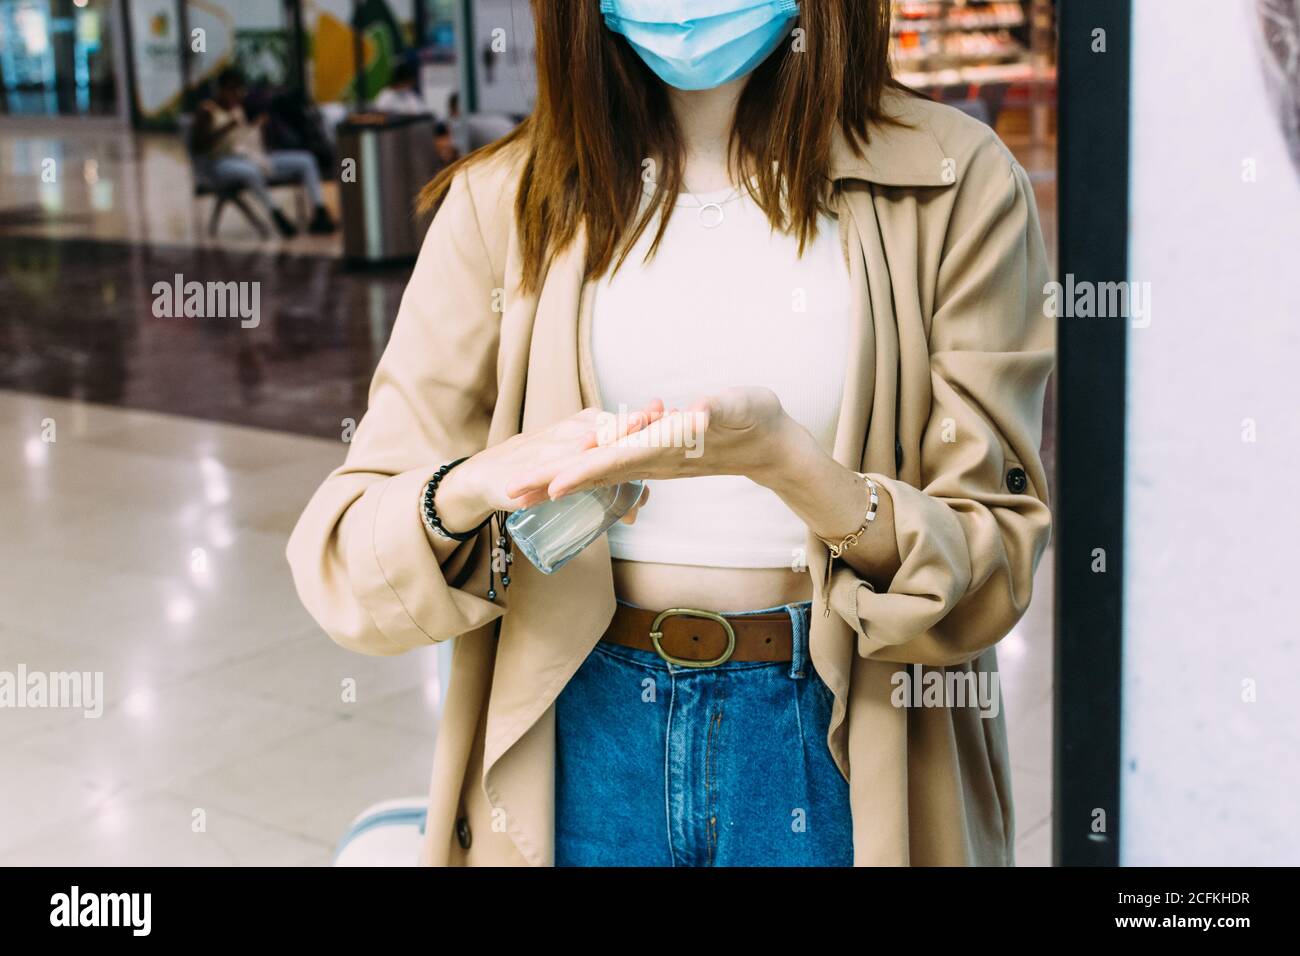 une femme portant un masque facial et utilisant du gel hydro-alcoolique pour désinfecter ses mains à la gare Banque D'Images